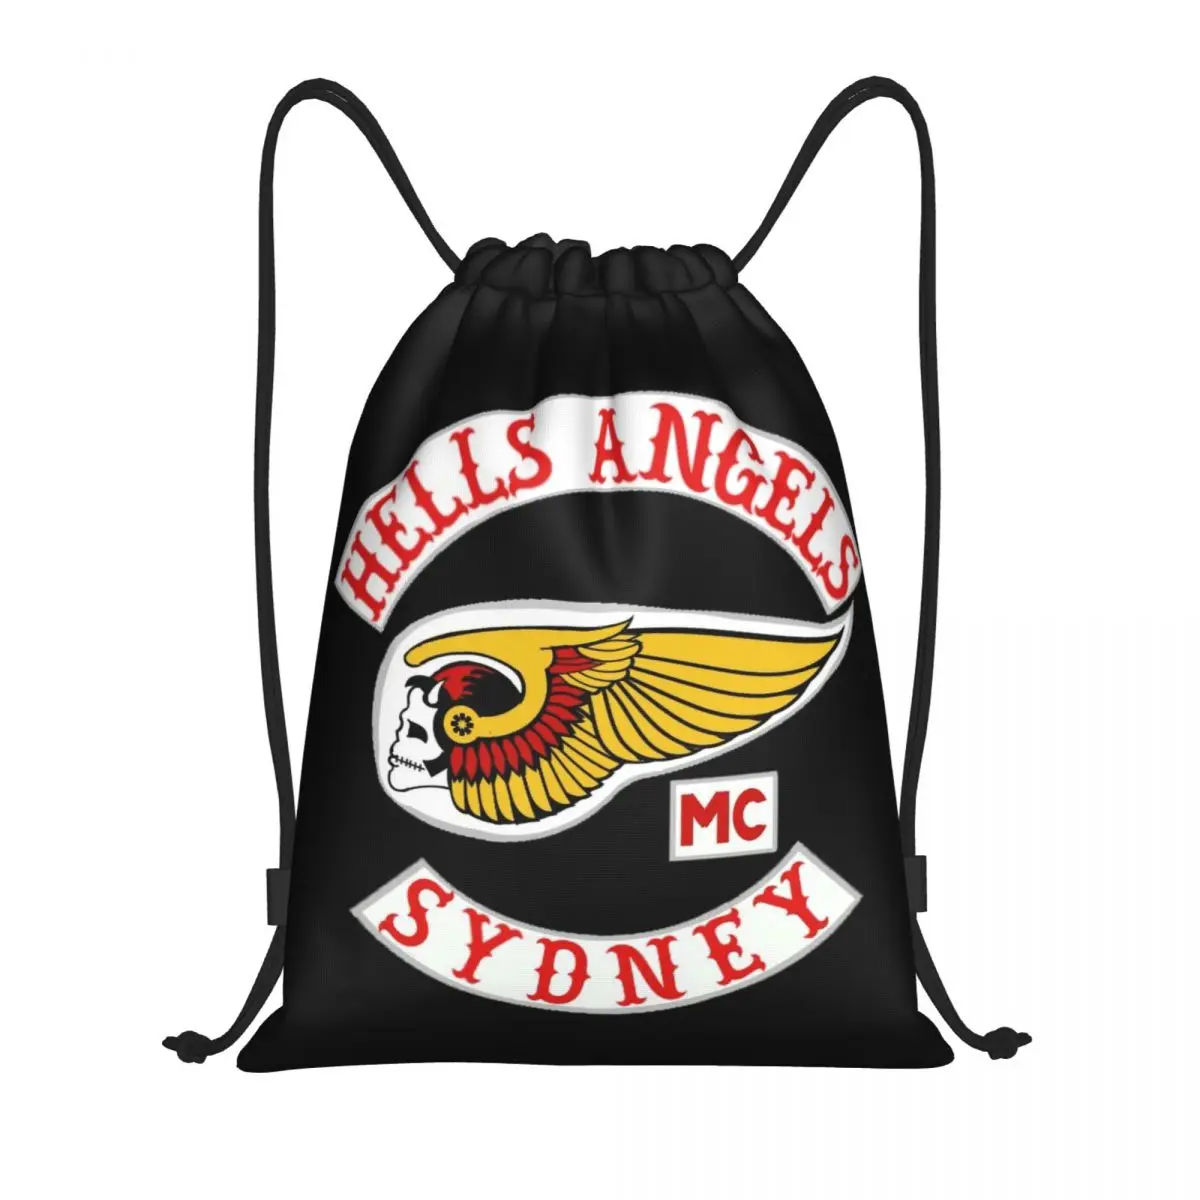 Рюкзак с логотипом Hells Angels World на шнурке, Спортивная спортивная сумка для женщин, мужчин, Тренировочный рюкзак для мотоклуба